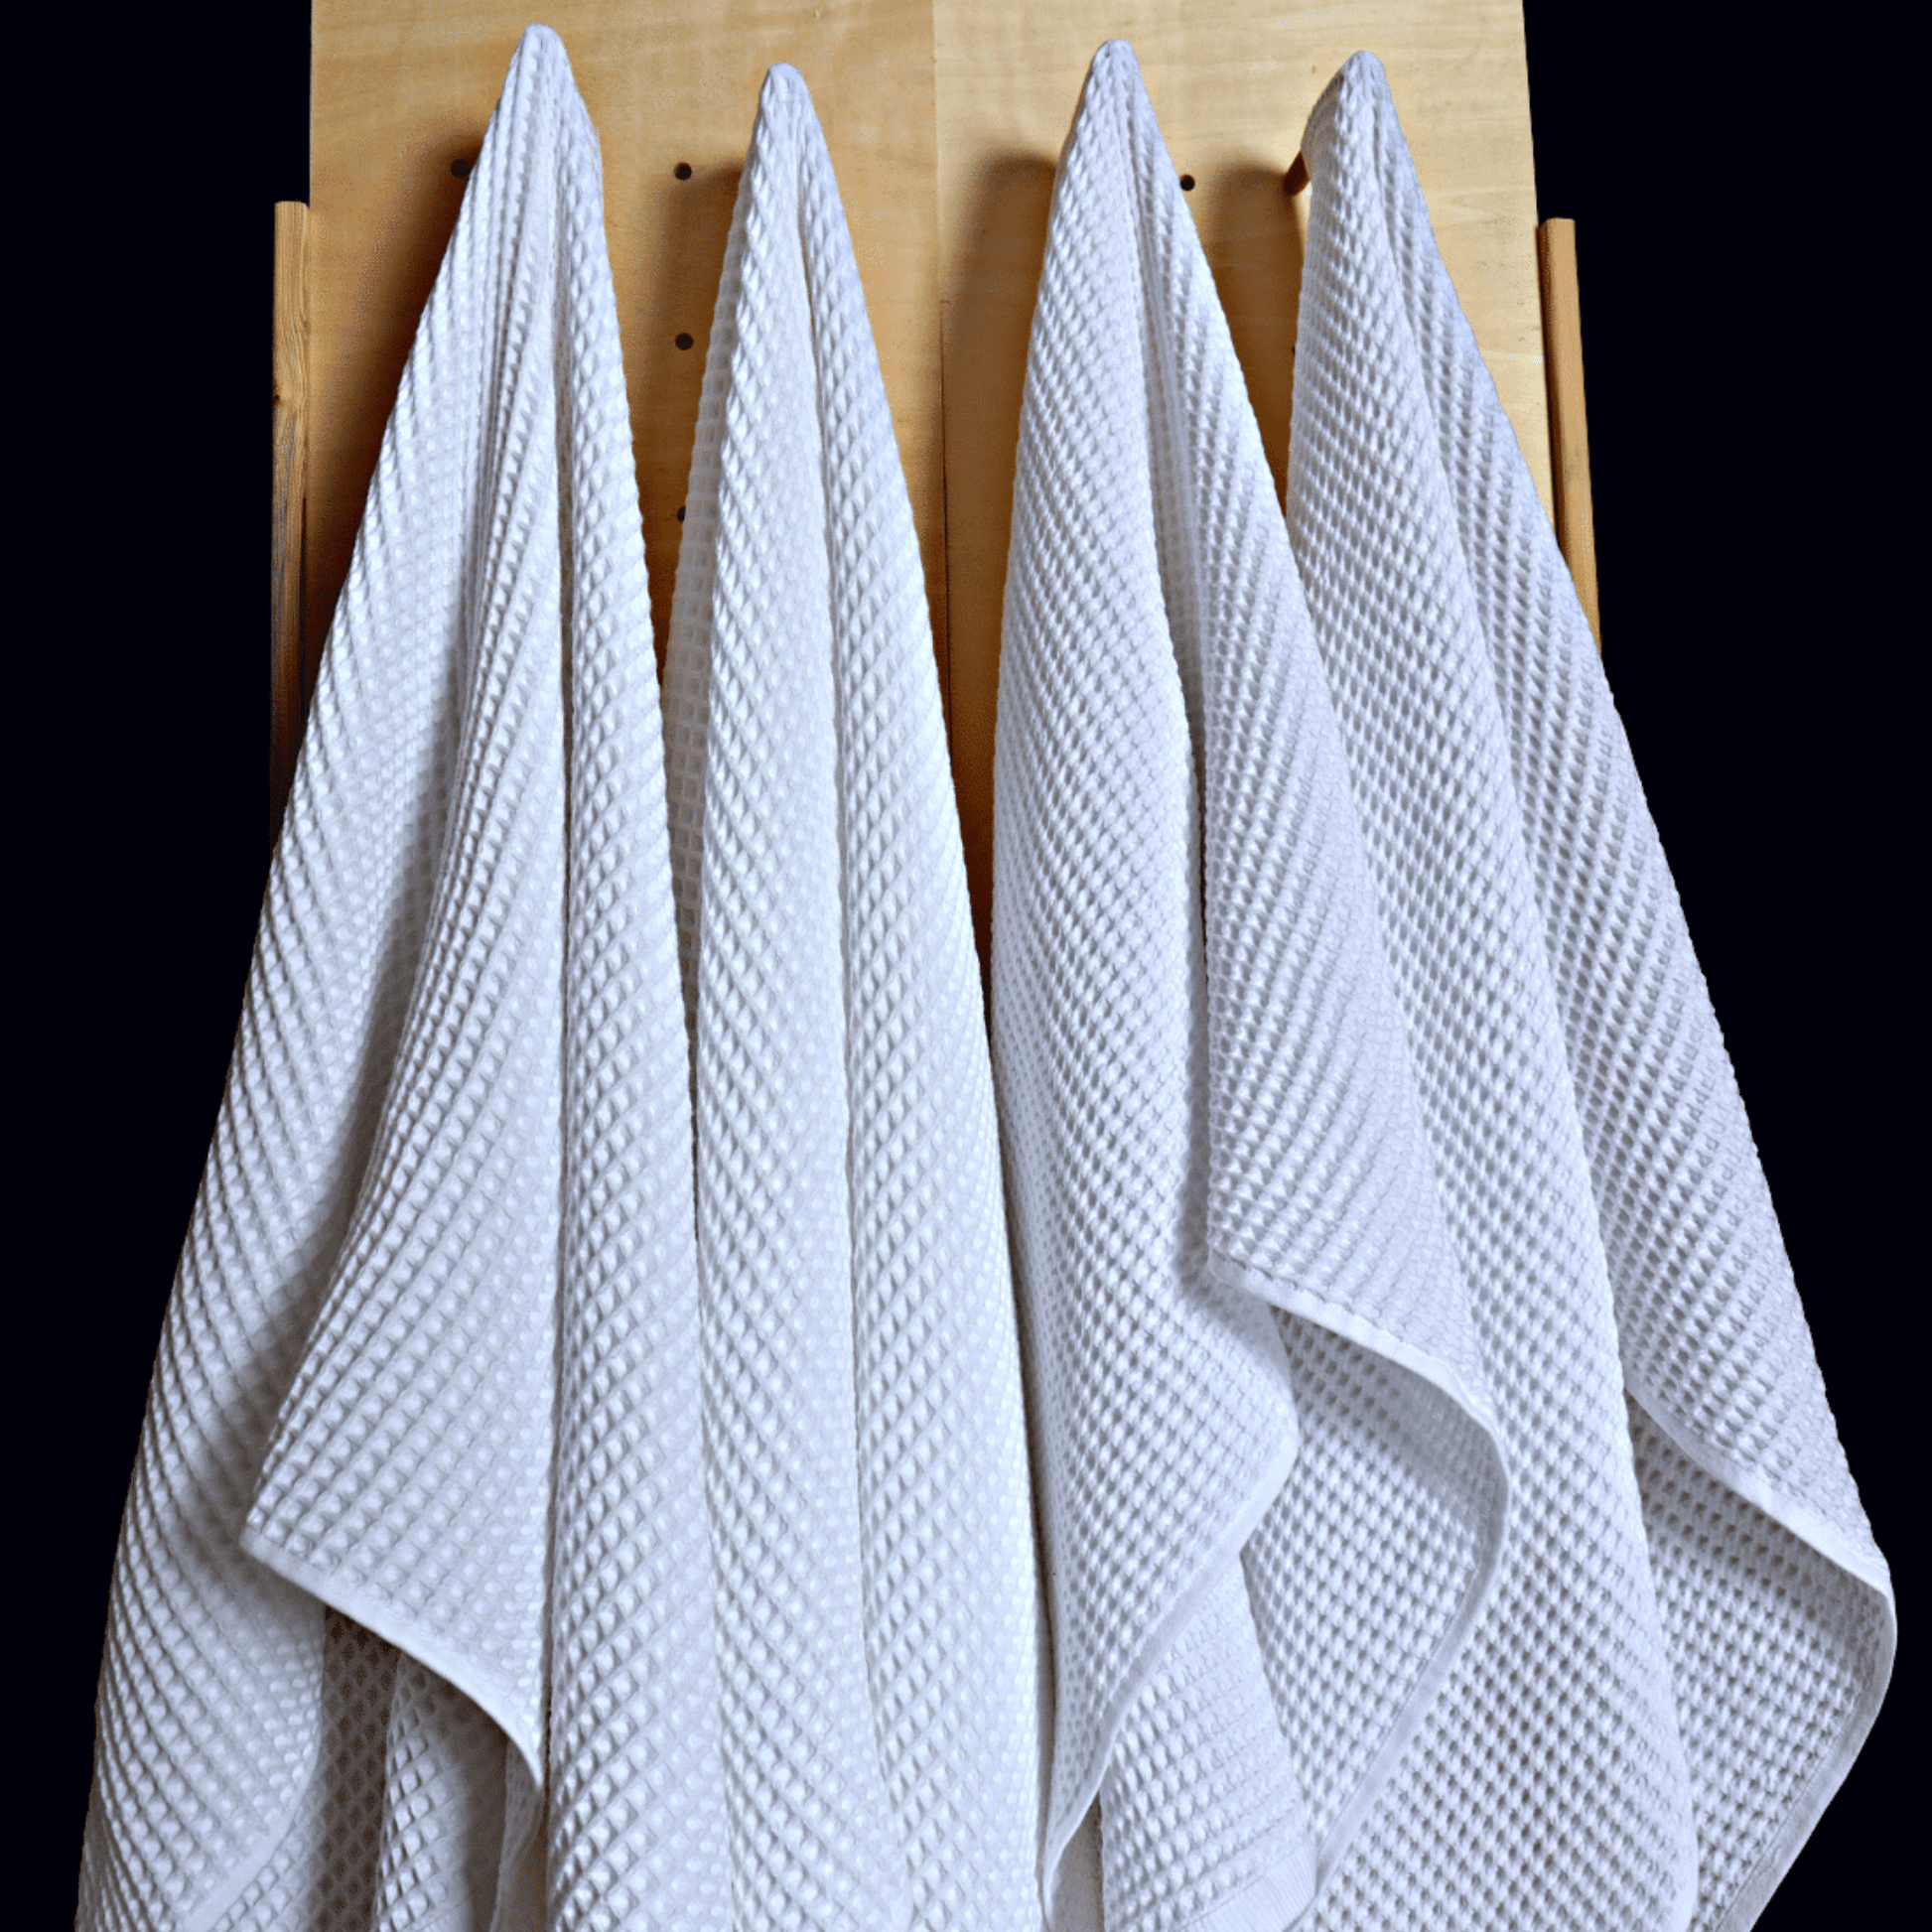 Waffle Weave Turkish Cotton Bath Towel and Towel Set – Pine & Palm Home